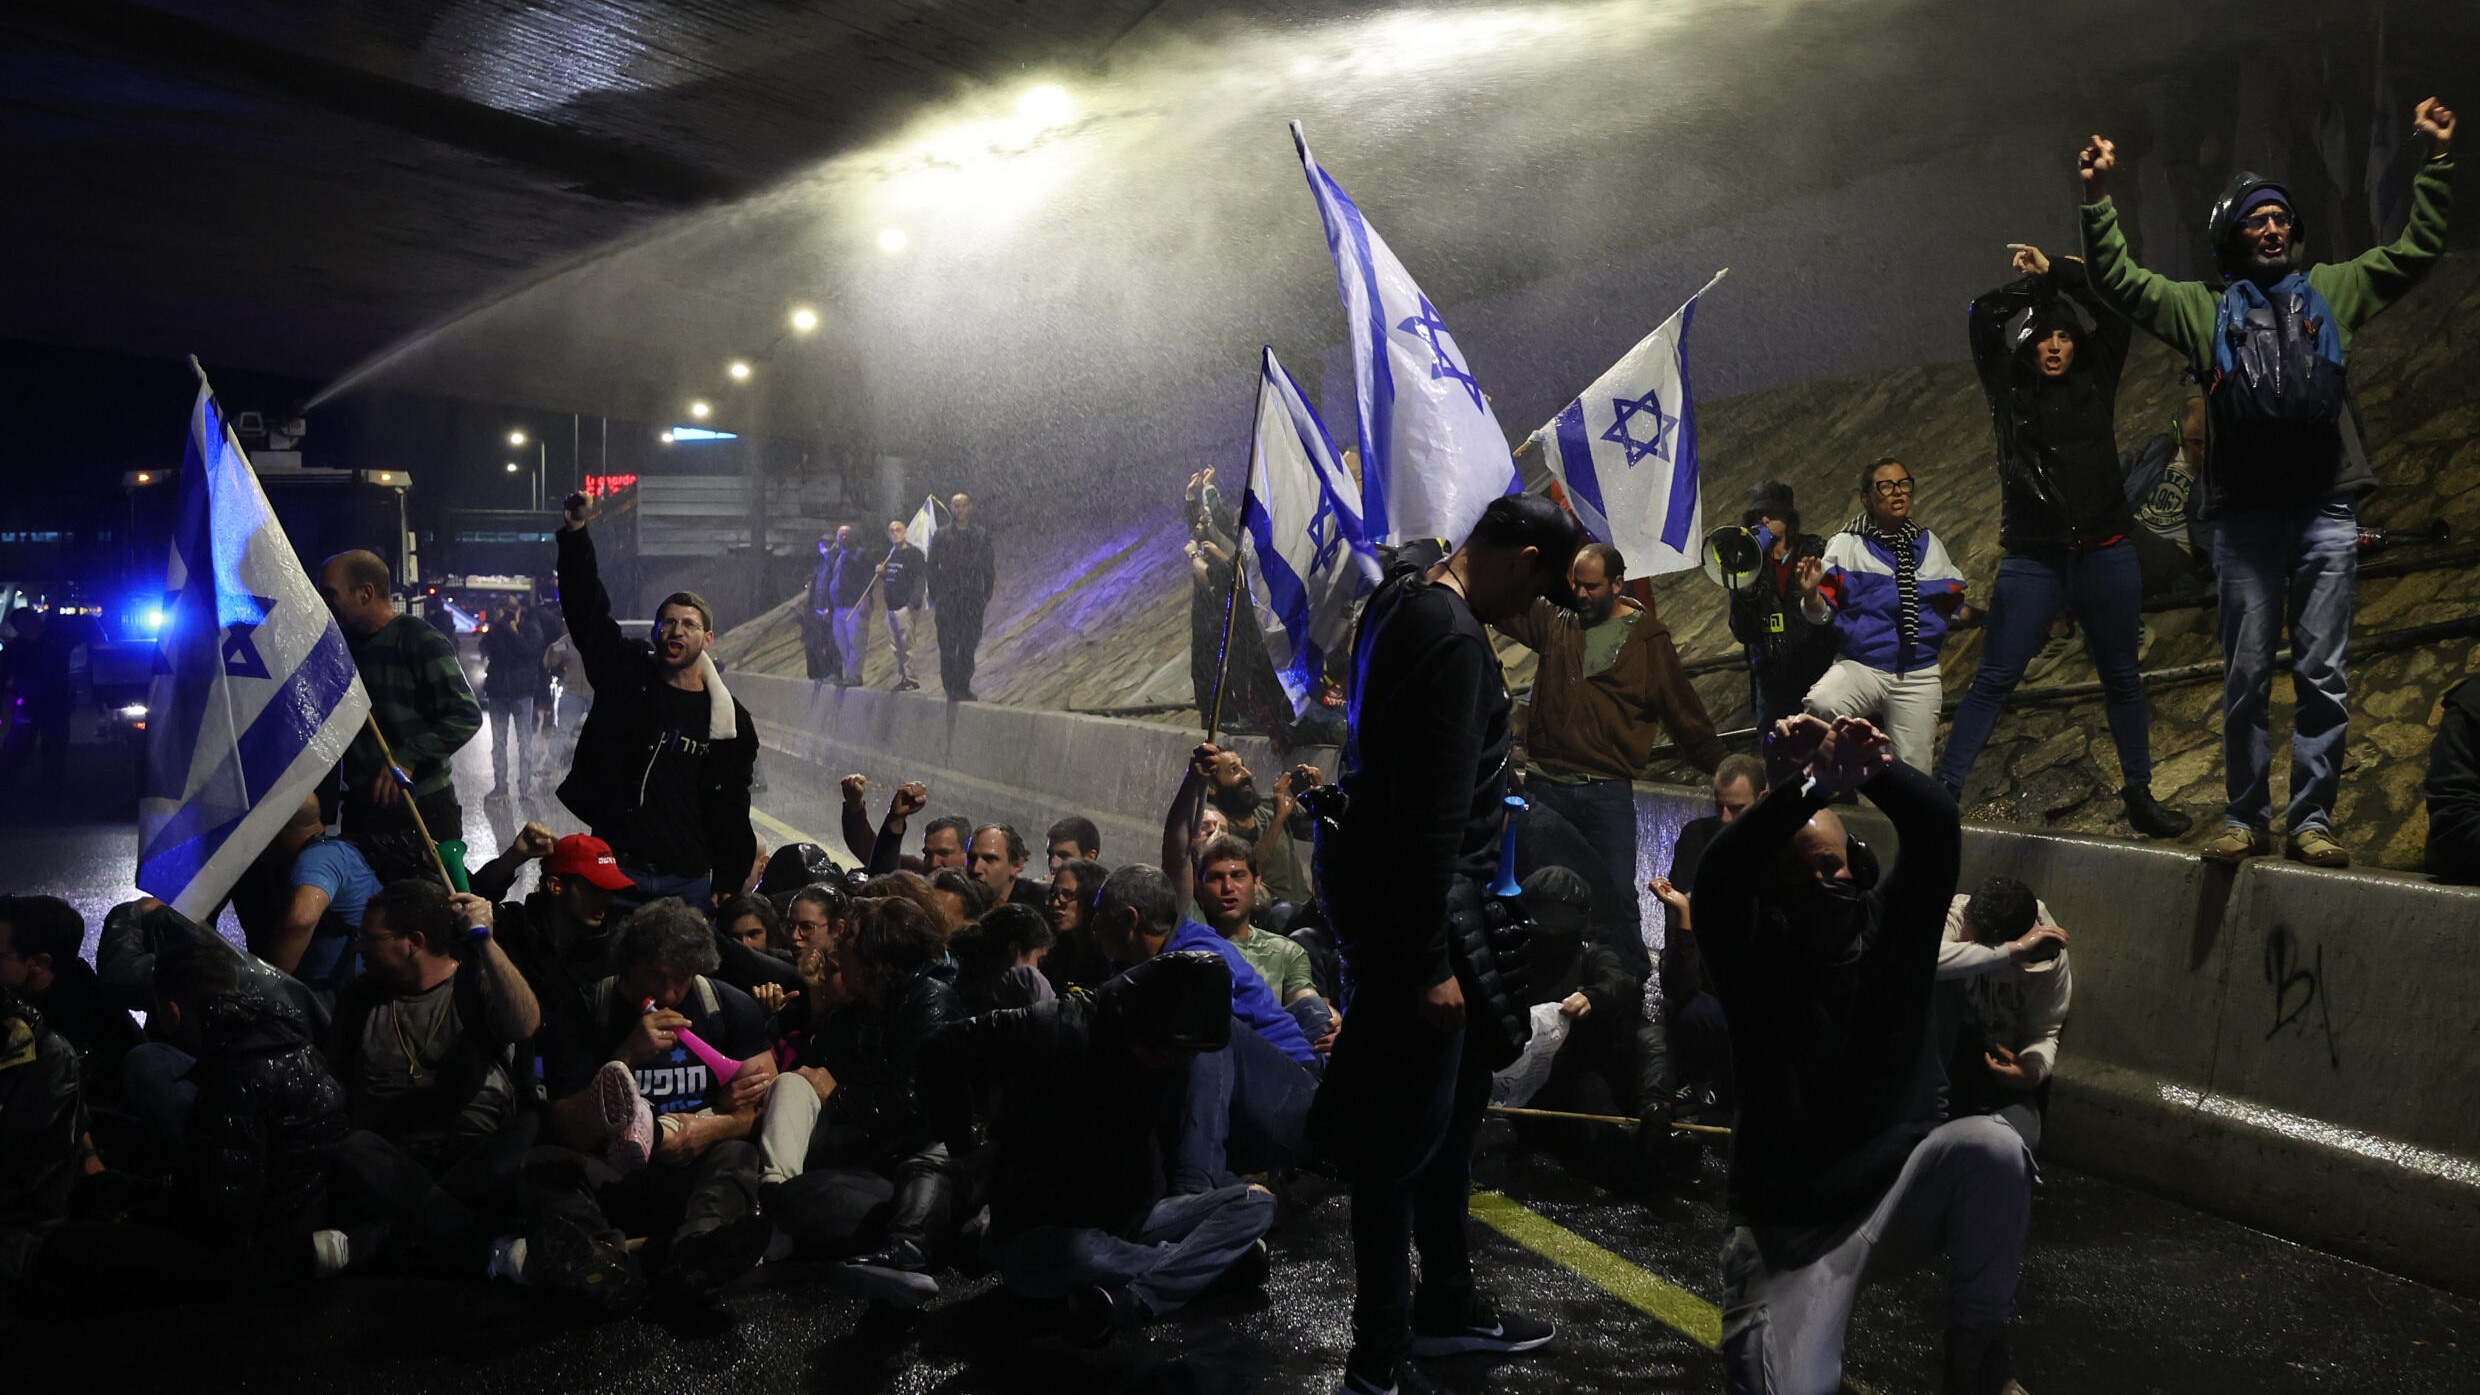 احتجاجات في تل أبيب للمطالبة بصفقة واضحة لتبادل الأسرى